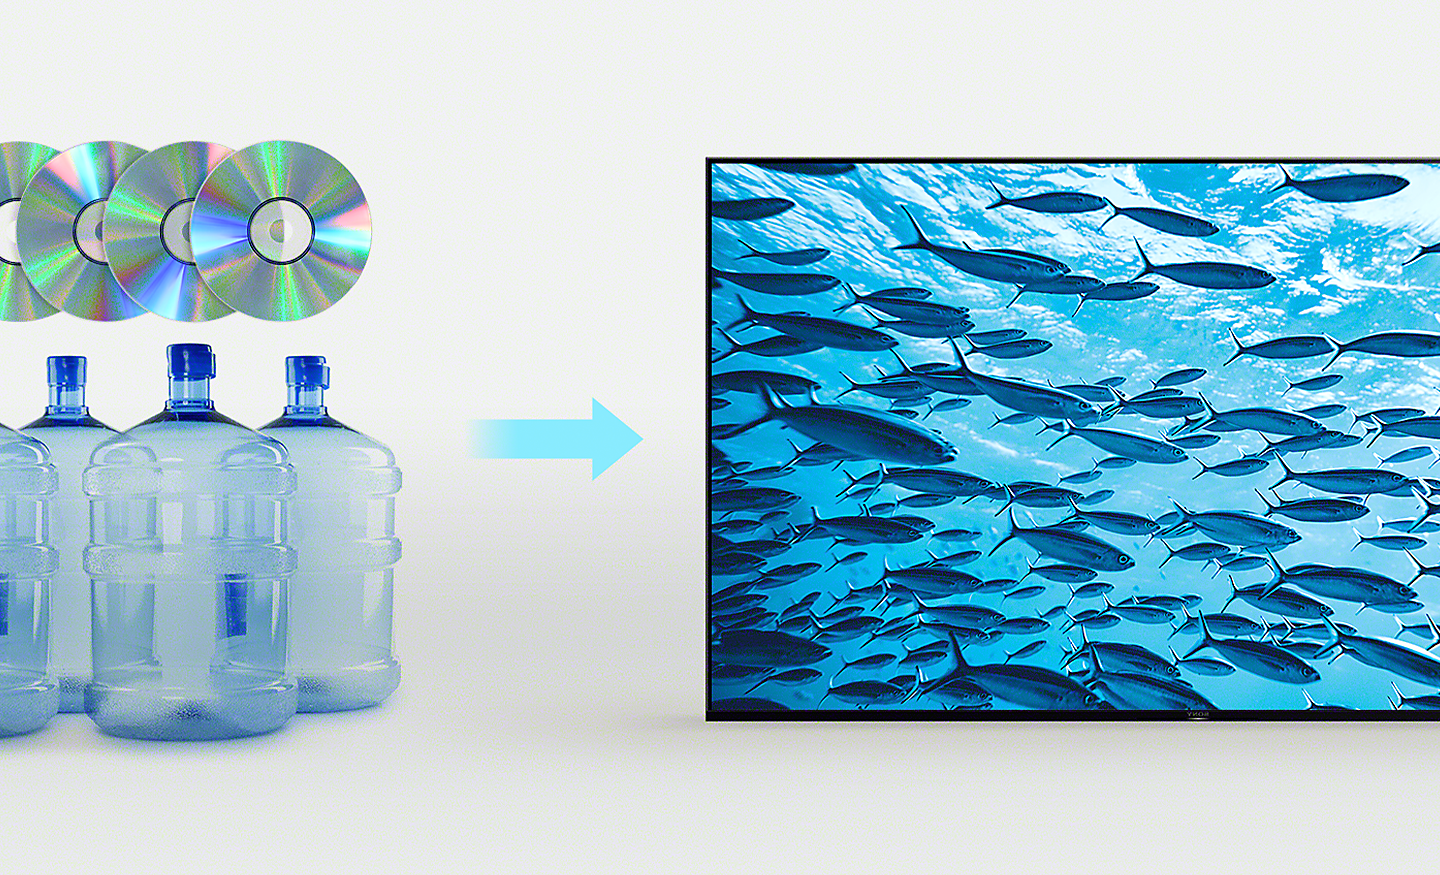 Bild von vier Kunststoffflaschen und vier CDs links und einem Pfeil rechts, der auf einen BRAVIA Fernseher mit einem Screenshot schwimmender Fische im Ozean zeigt